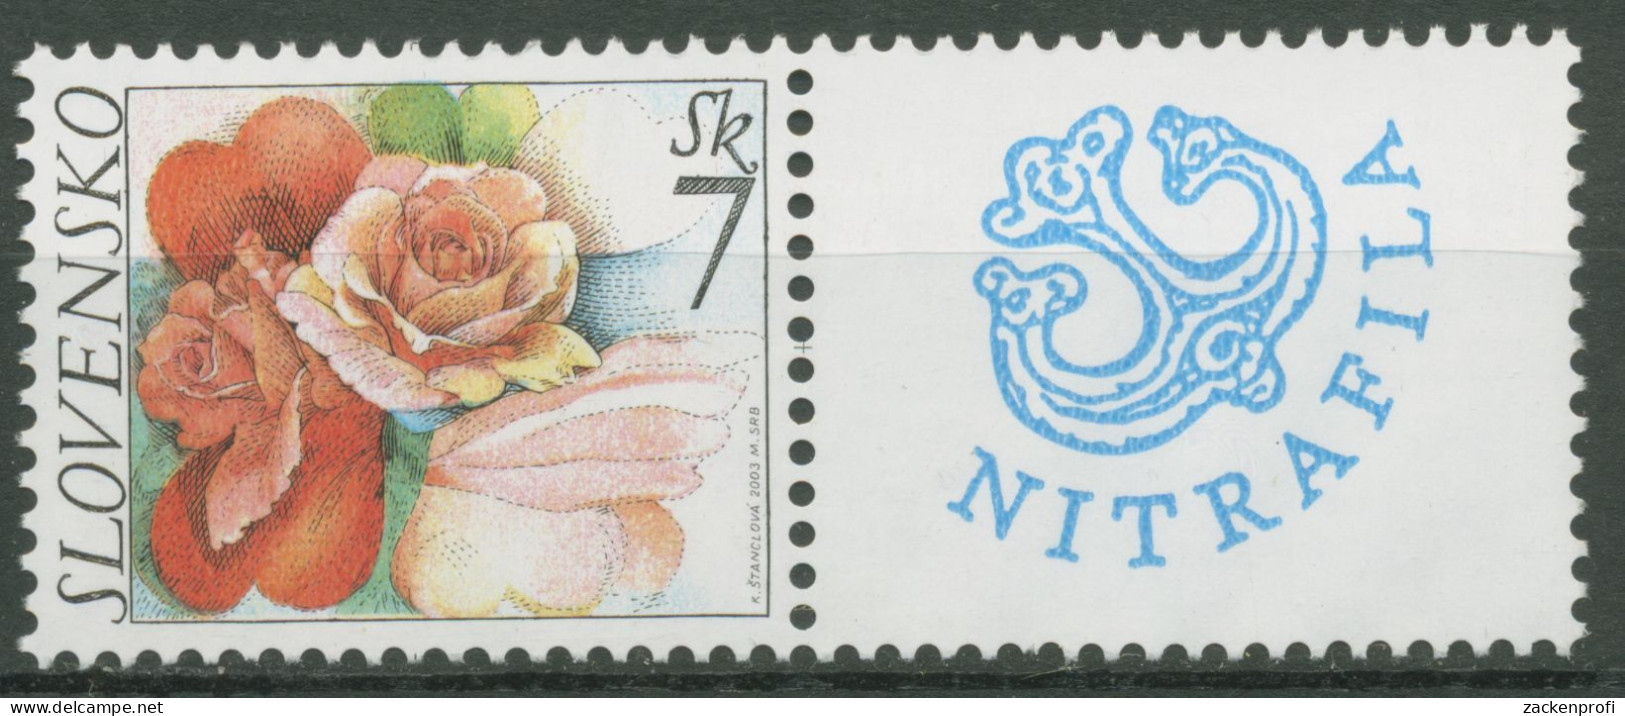 Slowakei 2003 Grußmarke Blumen Rosen 446 Zf Postfrisch - Ungebraucht